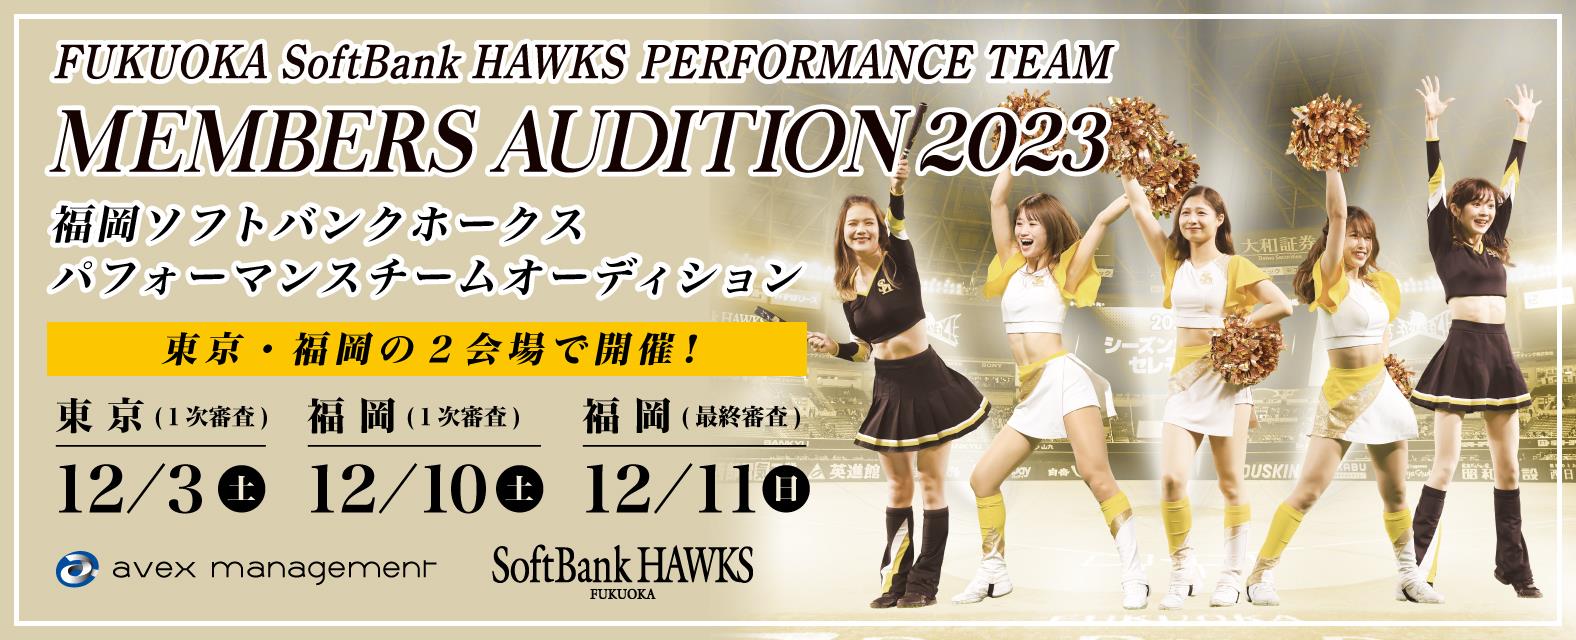 福岡ソフトバンクホークスパフォーマンスチームメンバーオーディション2023